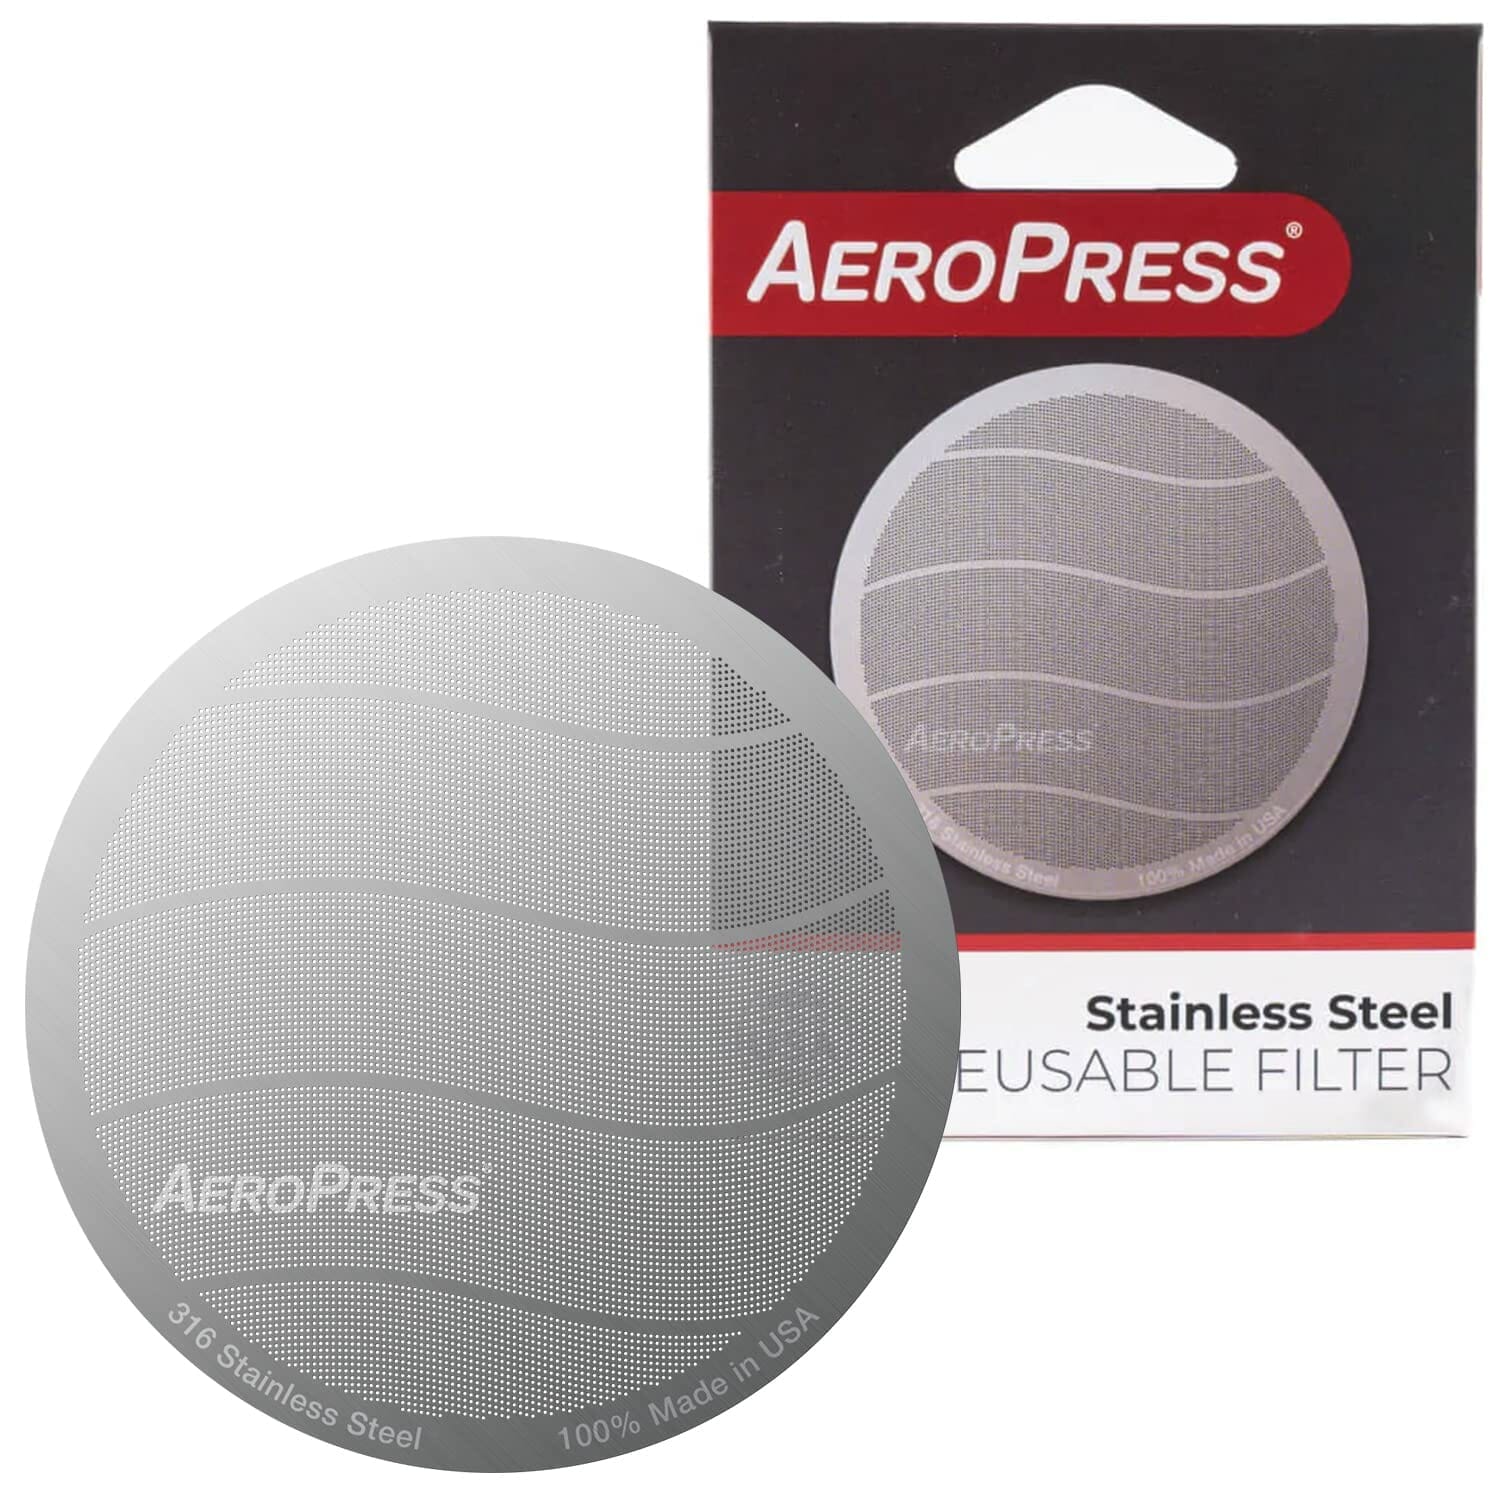 AeroPress Filtro reutilizable de acero inoxidable, filtro de café de metal  para cafeteras AeroPress Original y AeroPress Go, 1 paquete, 1 filtro, gris